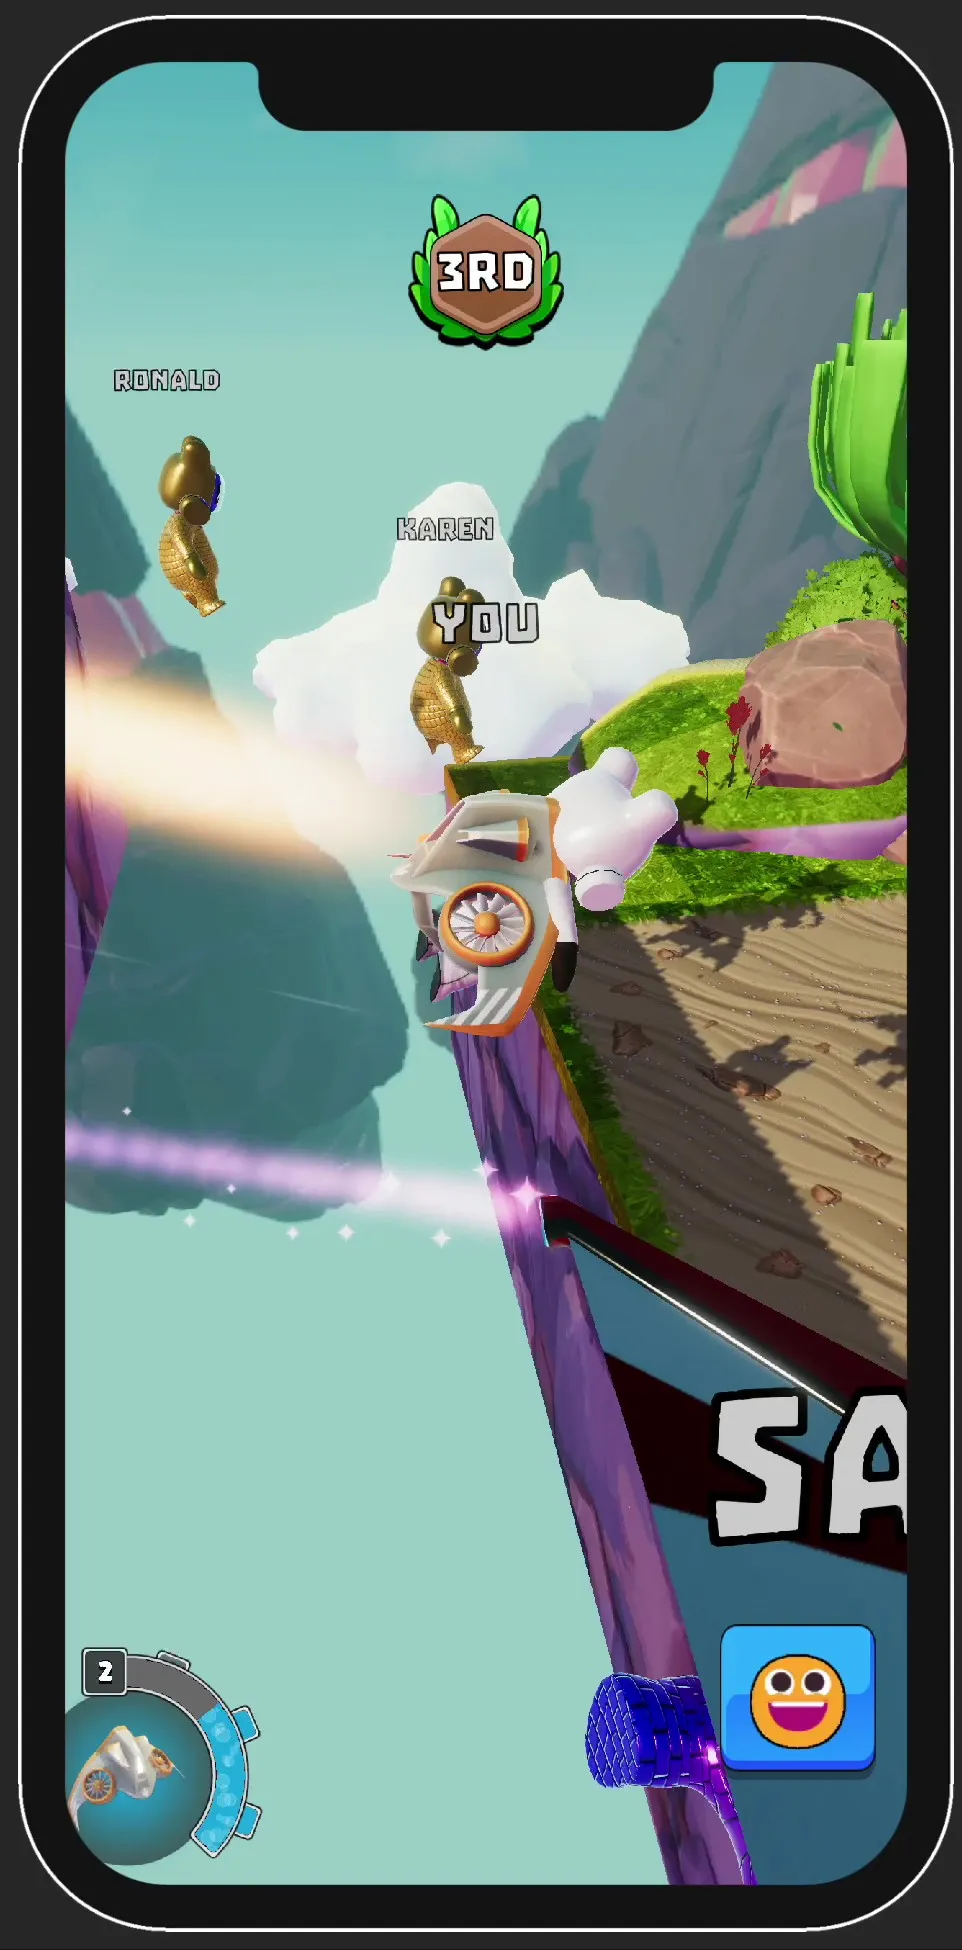 AFAR Rush gameplay: Flying to next terrain